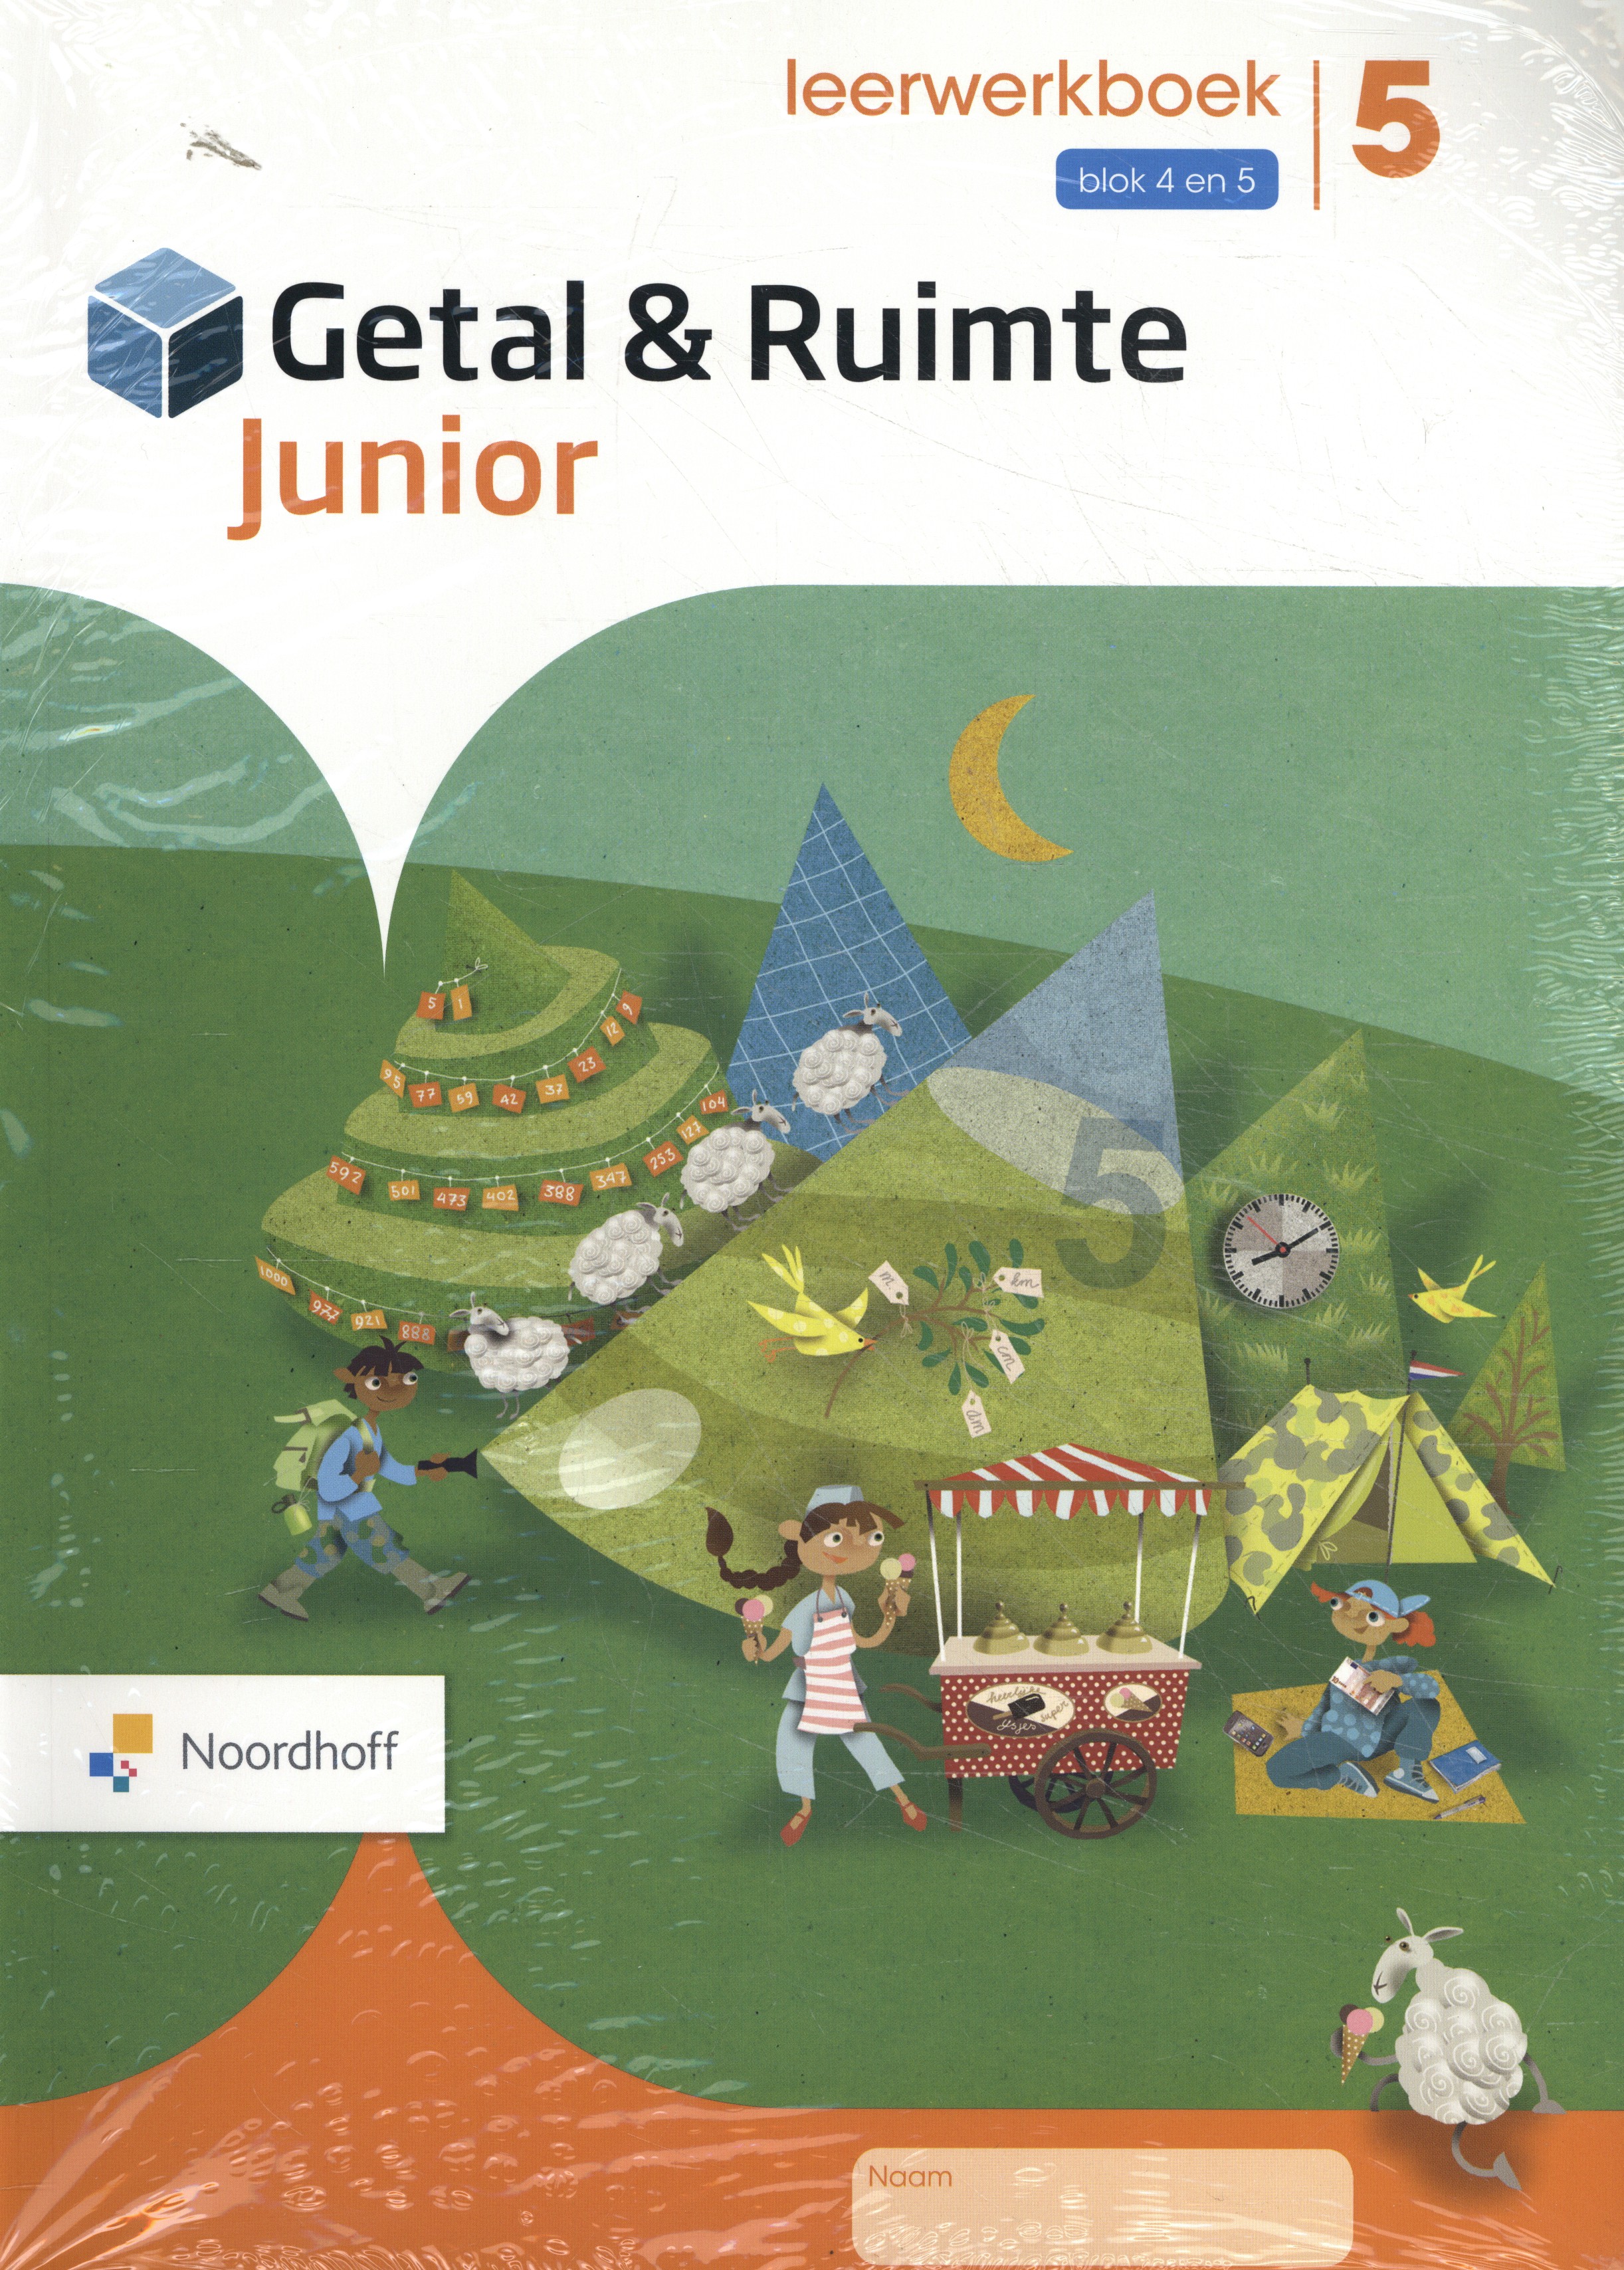 Getal & Ruimte Junior leerwerkboek groep 5 blok 4 en 5_set a 5